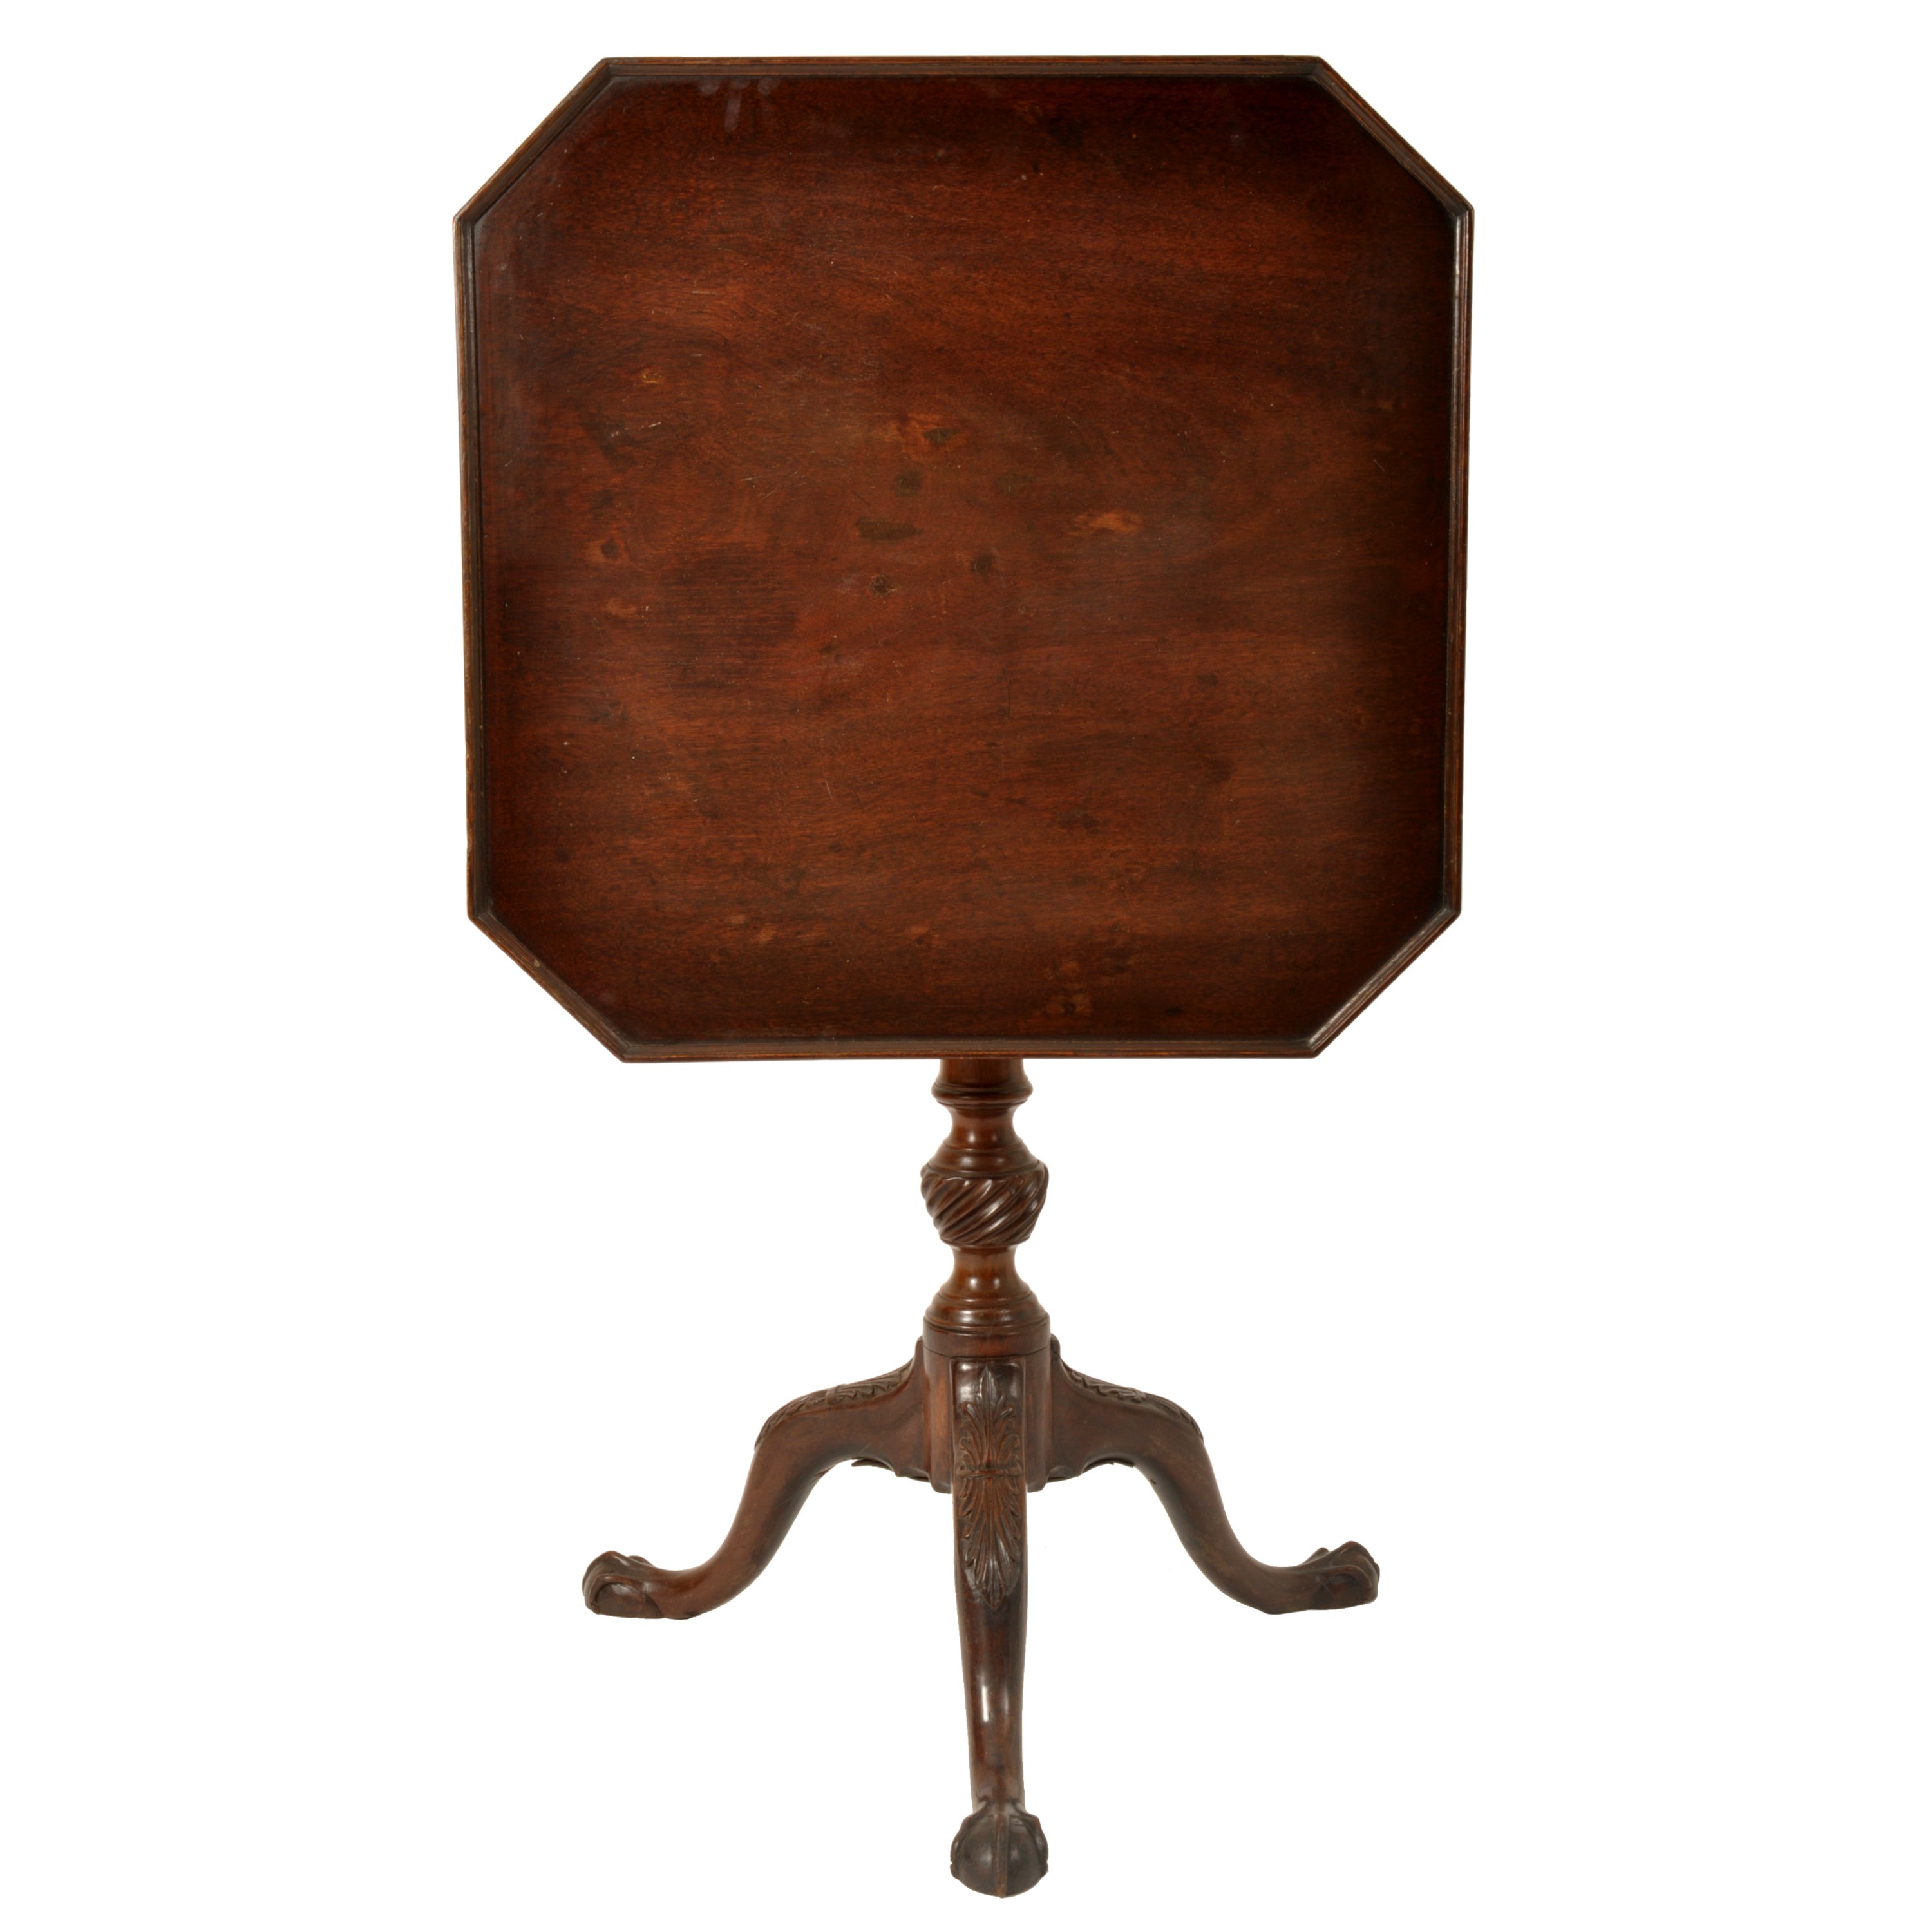 Une bonne table d'appoint/de vin Chippendale George III à plateau basculant, vers 1790.
La table a un plateau octogonal avec un plateau surélevé, le plateau basculant se verrouille sur une armature en forme de cage d'oiseau, permettant au plateau de